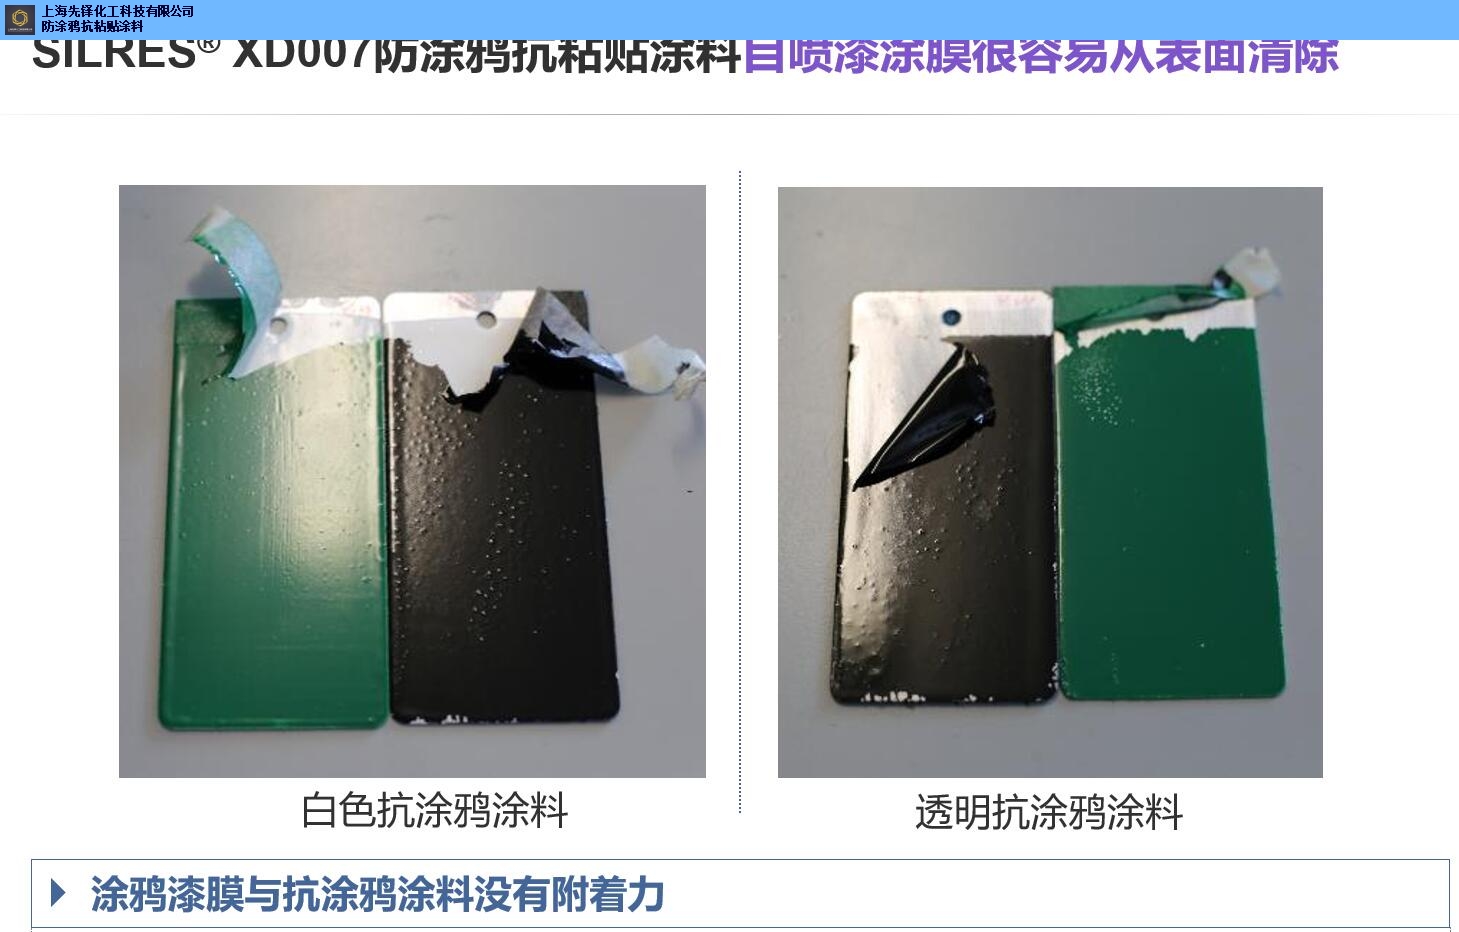 山西正规XDSY007防涂鸦抗粘贴涂料厂家报价「上海先铎化工科技供应」